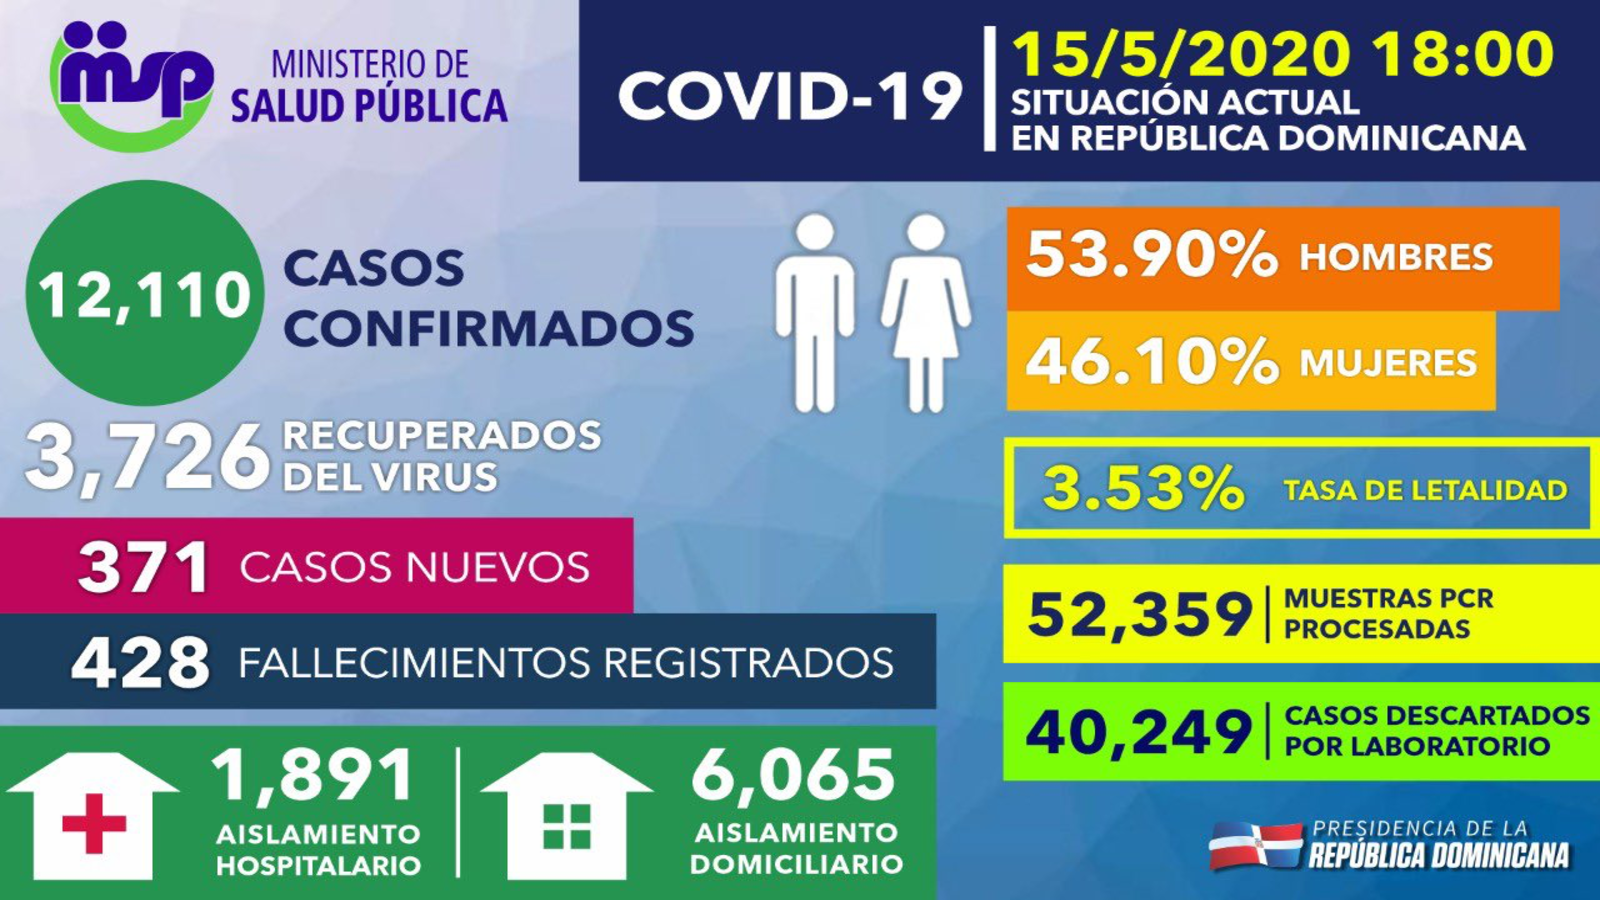 REPÚBLICA DOMINICANA: Recuperados de COVID-19 ascienden a 3,726; más de 40,200 casos sospechosos han sido descartados mediante pruebas PCR